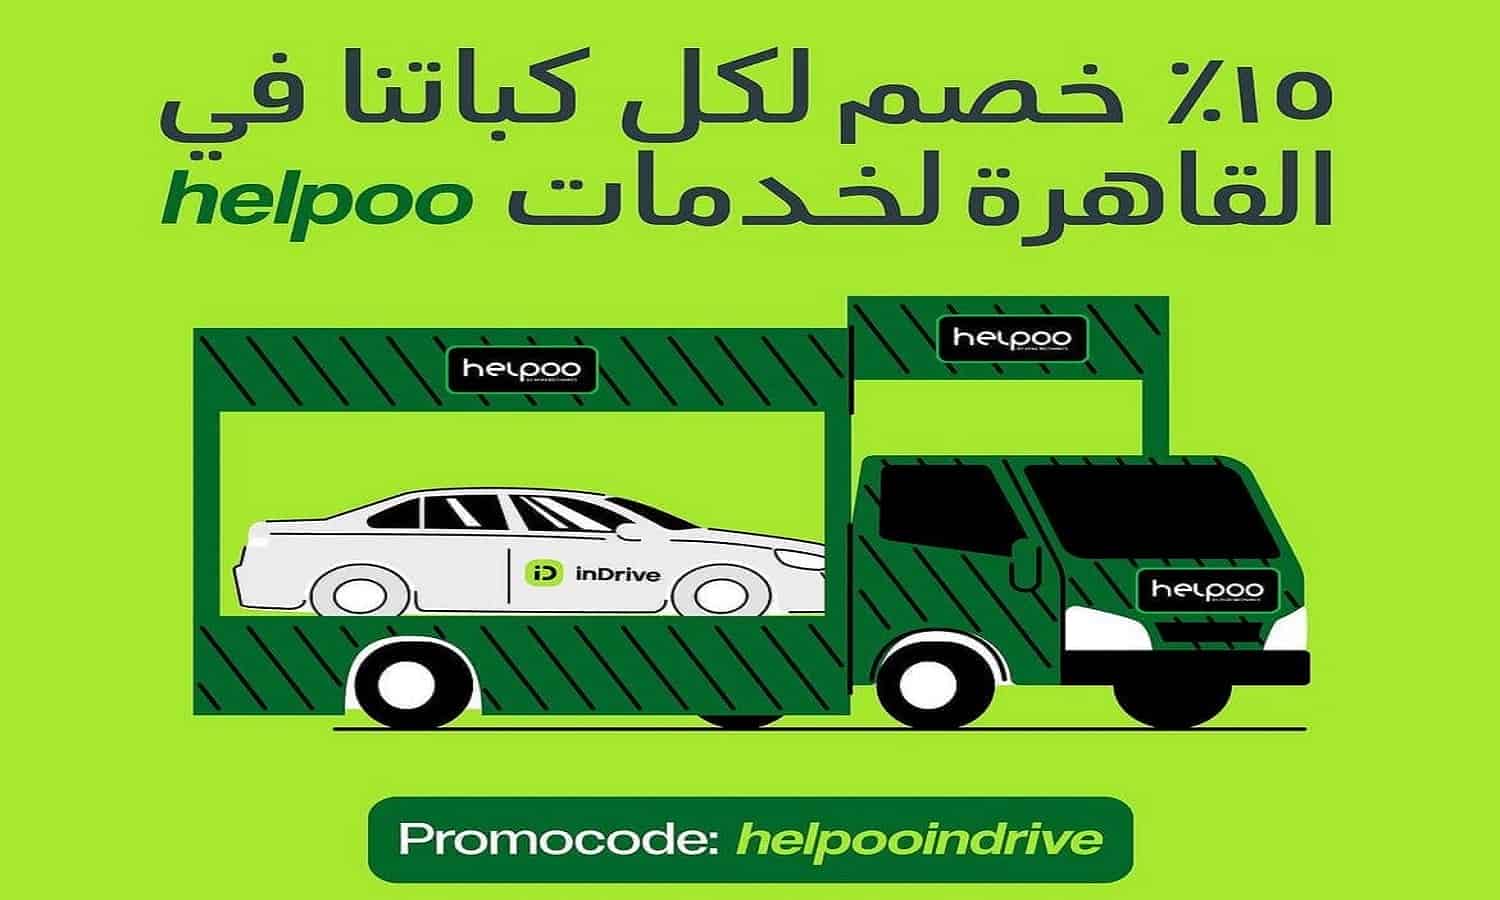 اندرايف تتعاون مع تطبيق Helpoo لتقديم خصم 15% على خدمات مساعدة على الطريق